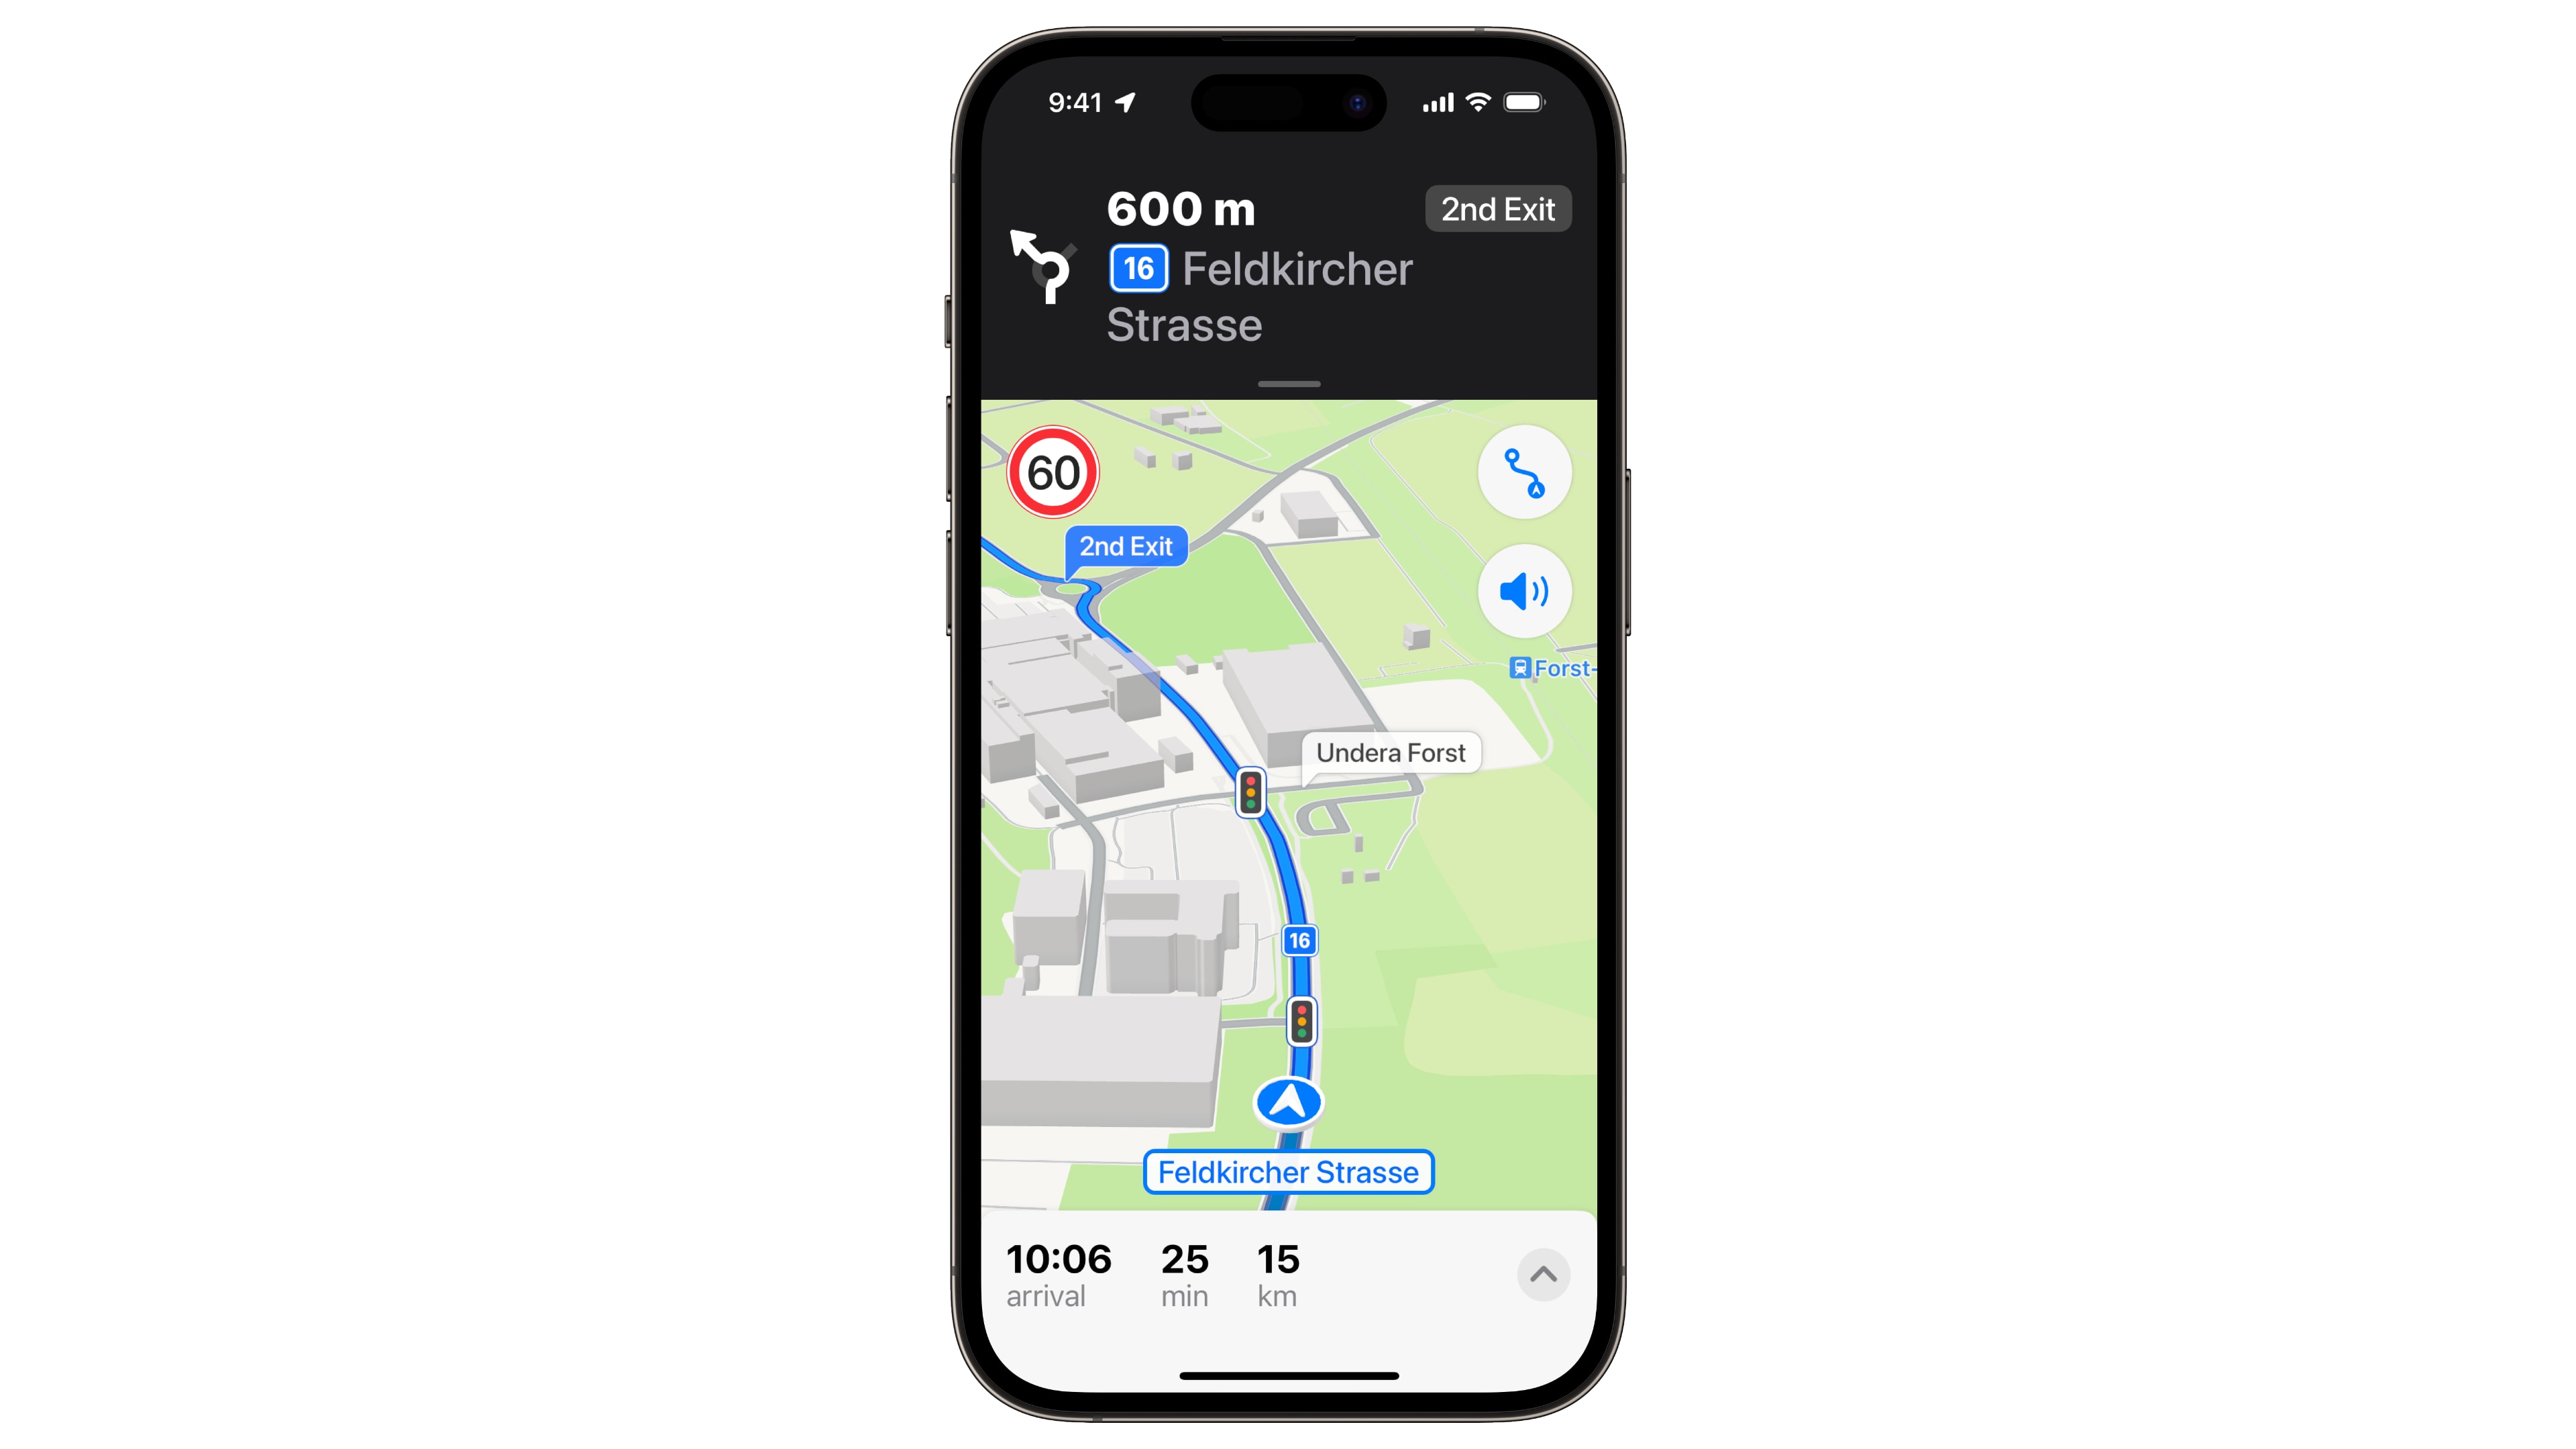 iPhone showcasing redesigned Apple Maps for Liechtenstein